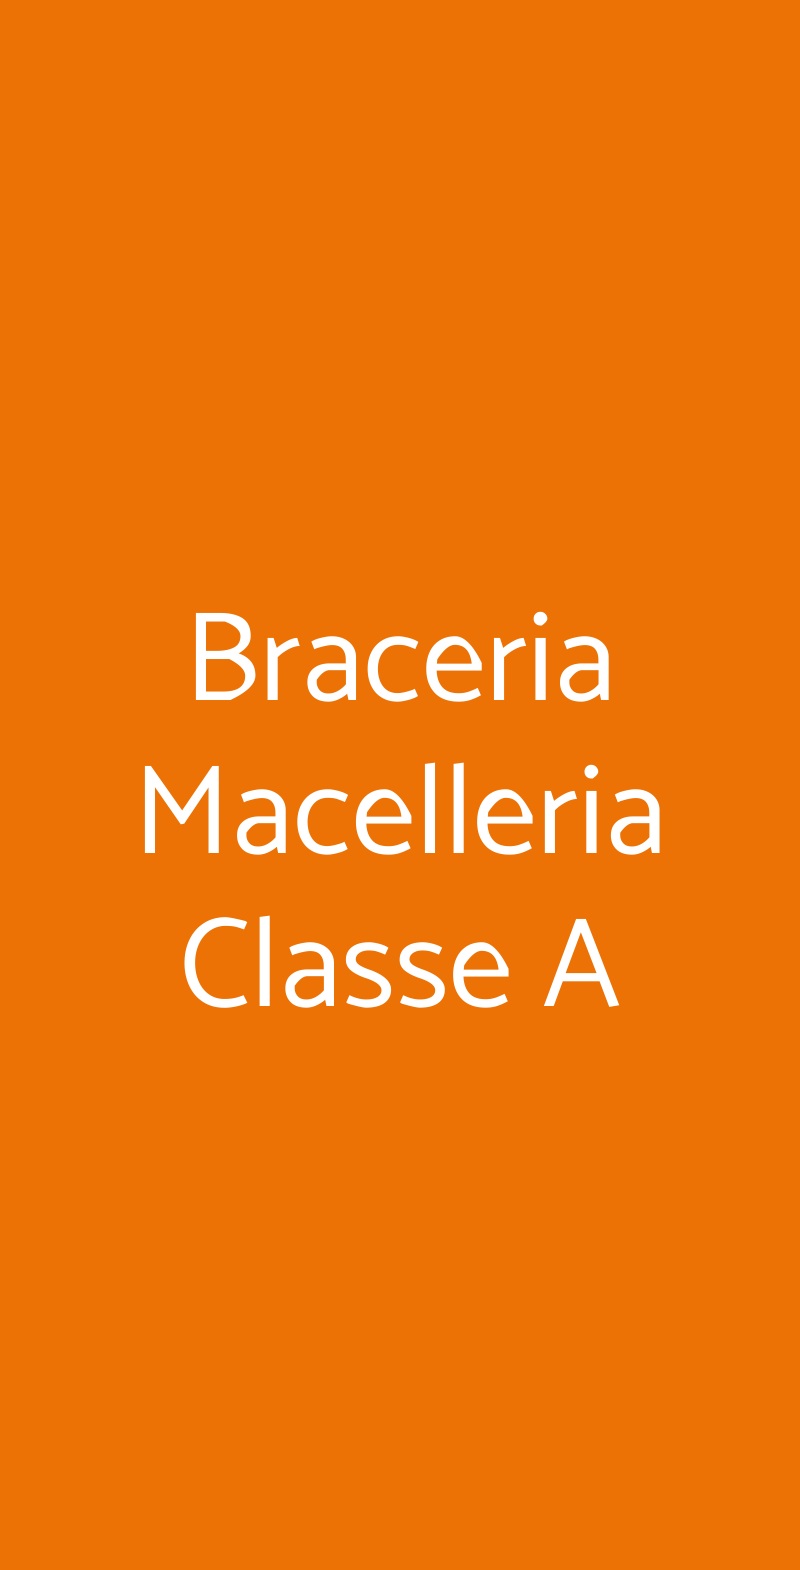 Braceria Macelleria Classe A Terni menù 1 pagina